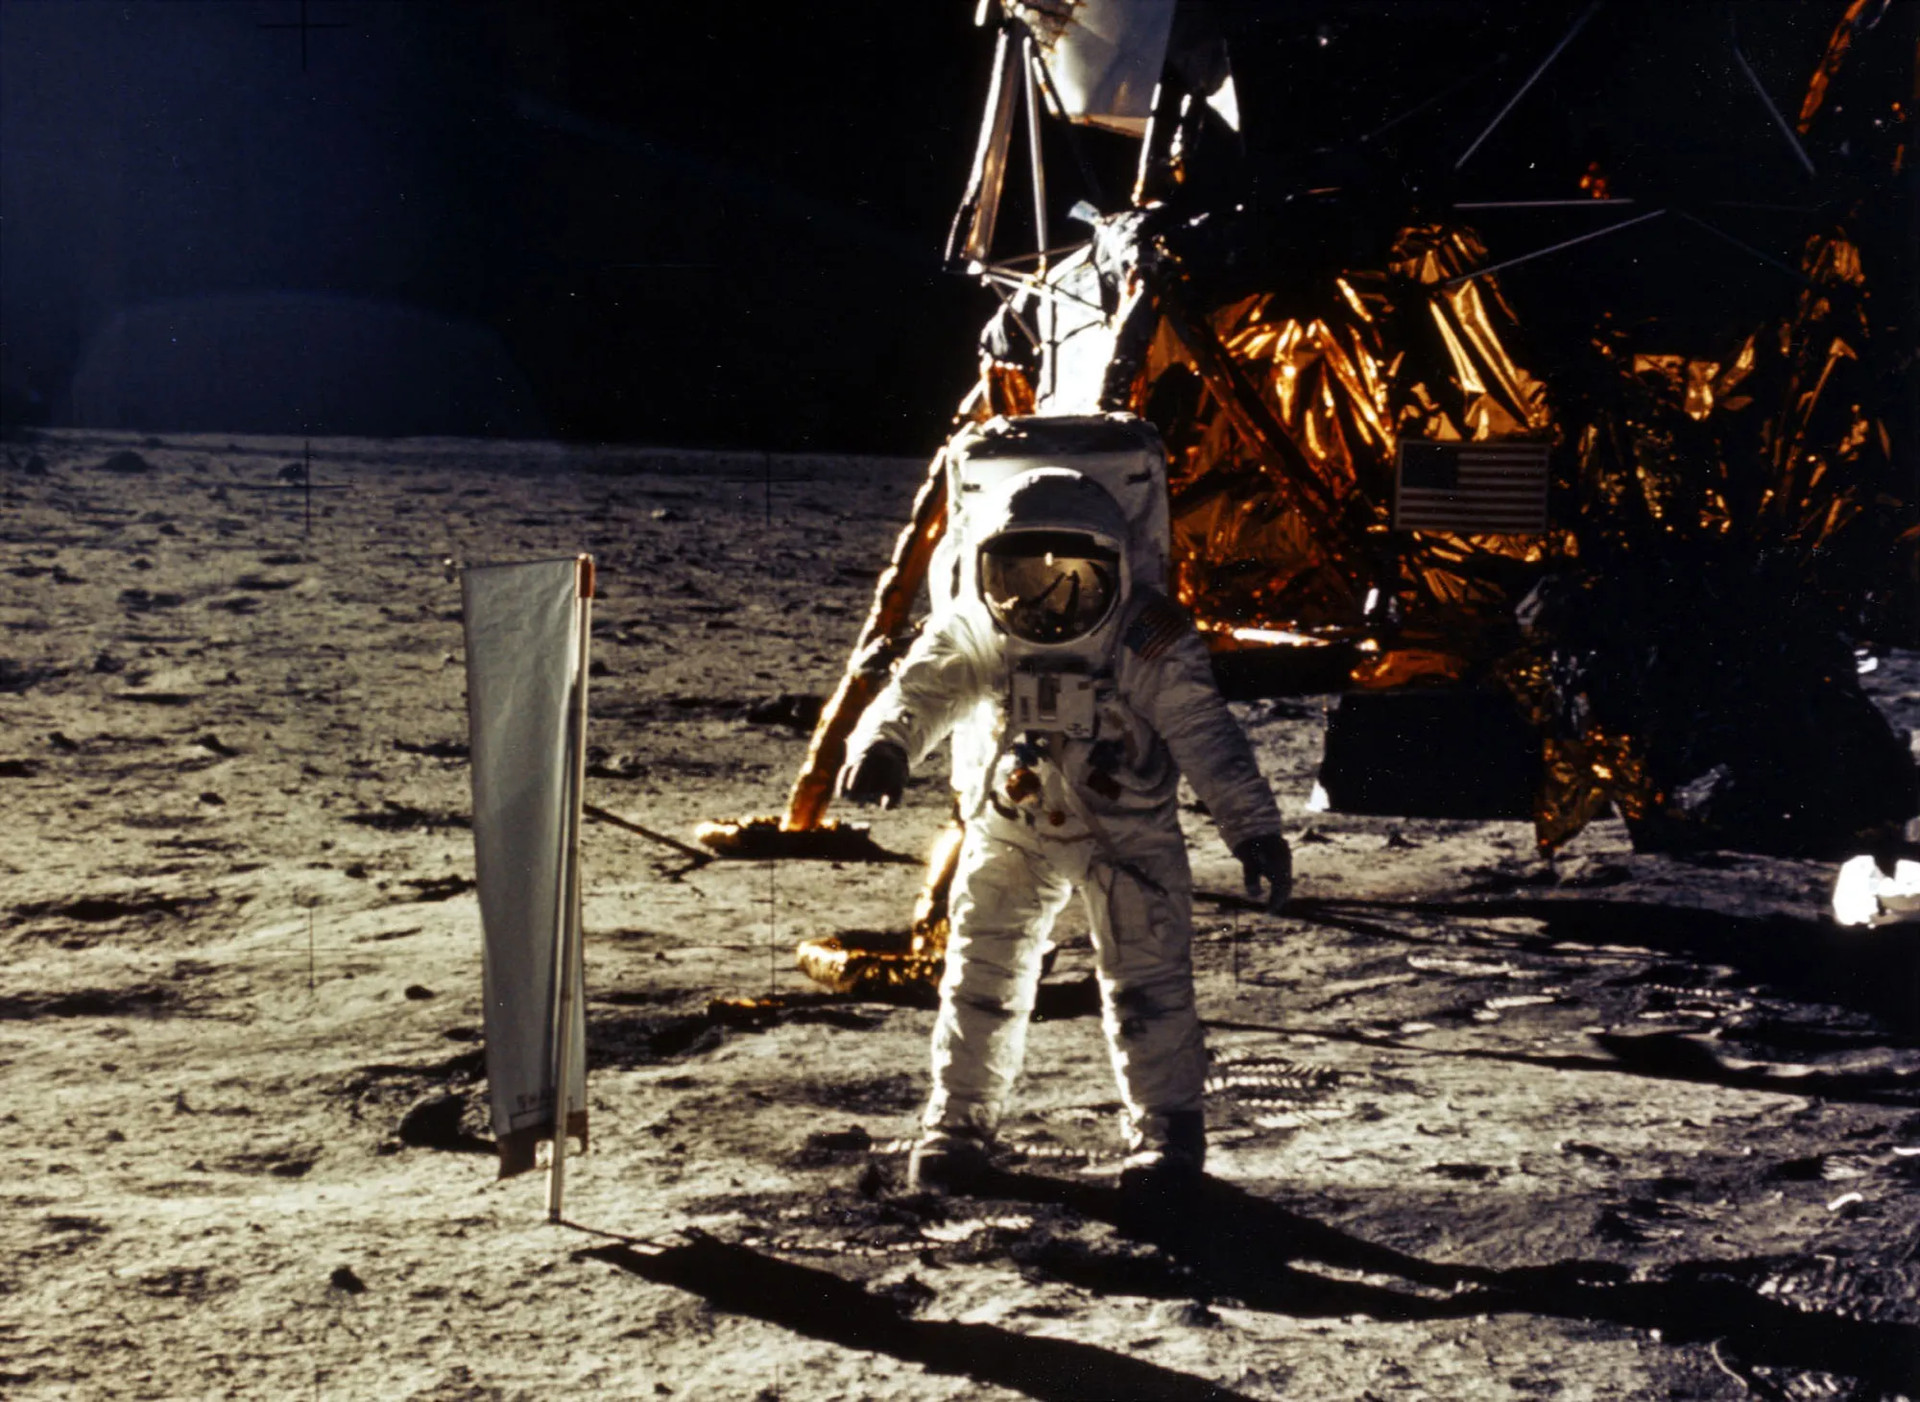 Vào ngày 21/7/1969, Neil Armstrong đã trở thành người đầu tiên đặt chân lên Mặt Trăng với tàu sứ mệnh Apollo 11. Khoảng 20 phút sau khi Armstrong đặt chân lên bề mặt Mặt Trăng, phi công bộ phận mô-đun Mặt Trăng, Buzz Aldrin đã tham gia tham hiểm cùng Neil Armstrong. Cả hai dành khoảng ba giờ để thực hiện các thí nghiệm và thu thập mẫu vật. (Ảnh: Google)